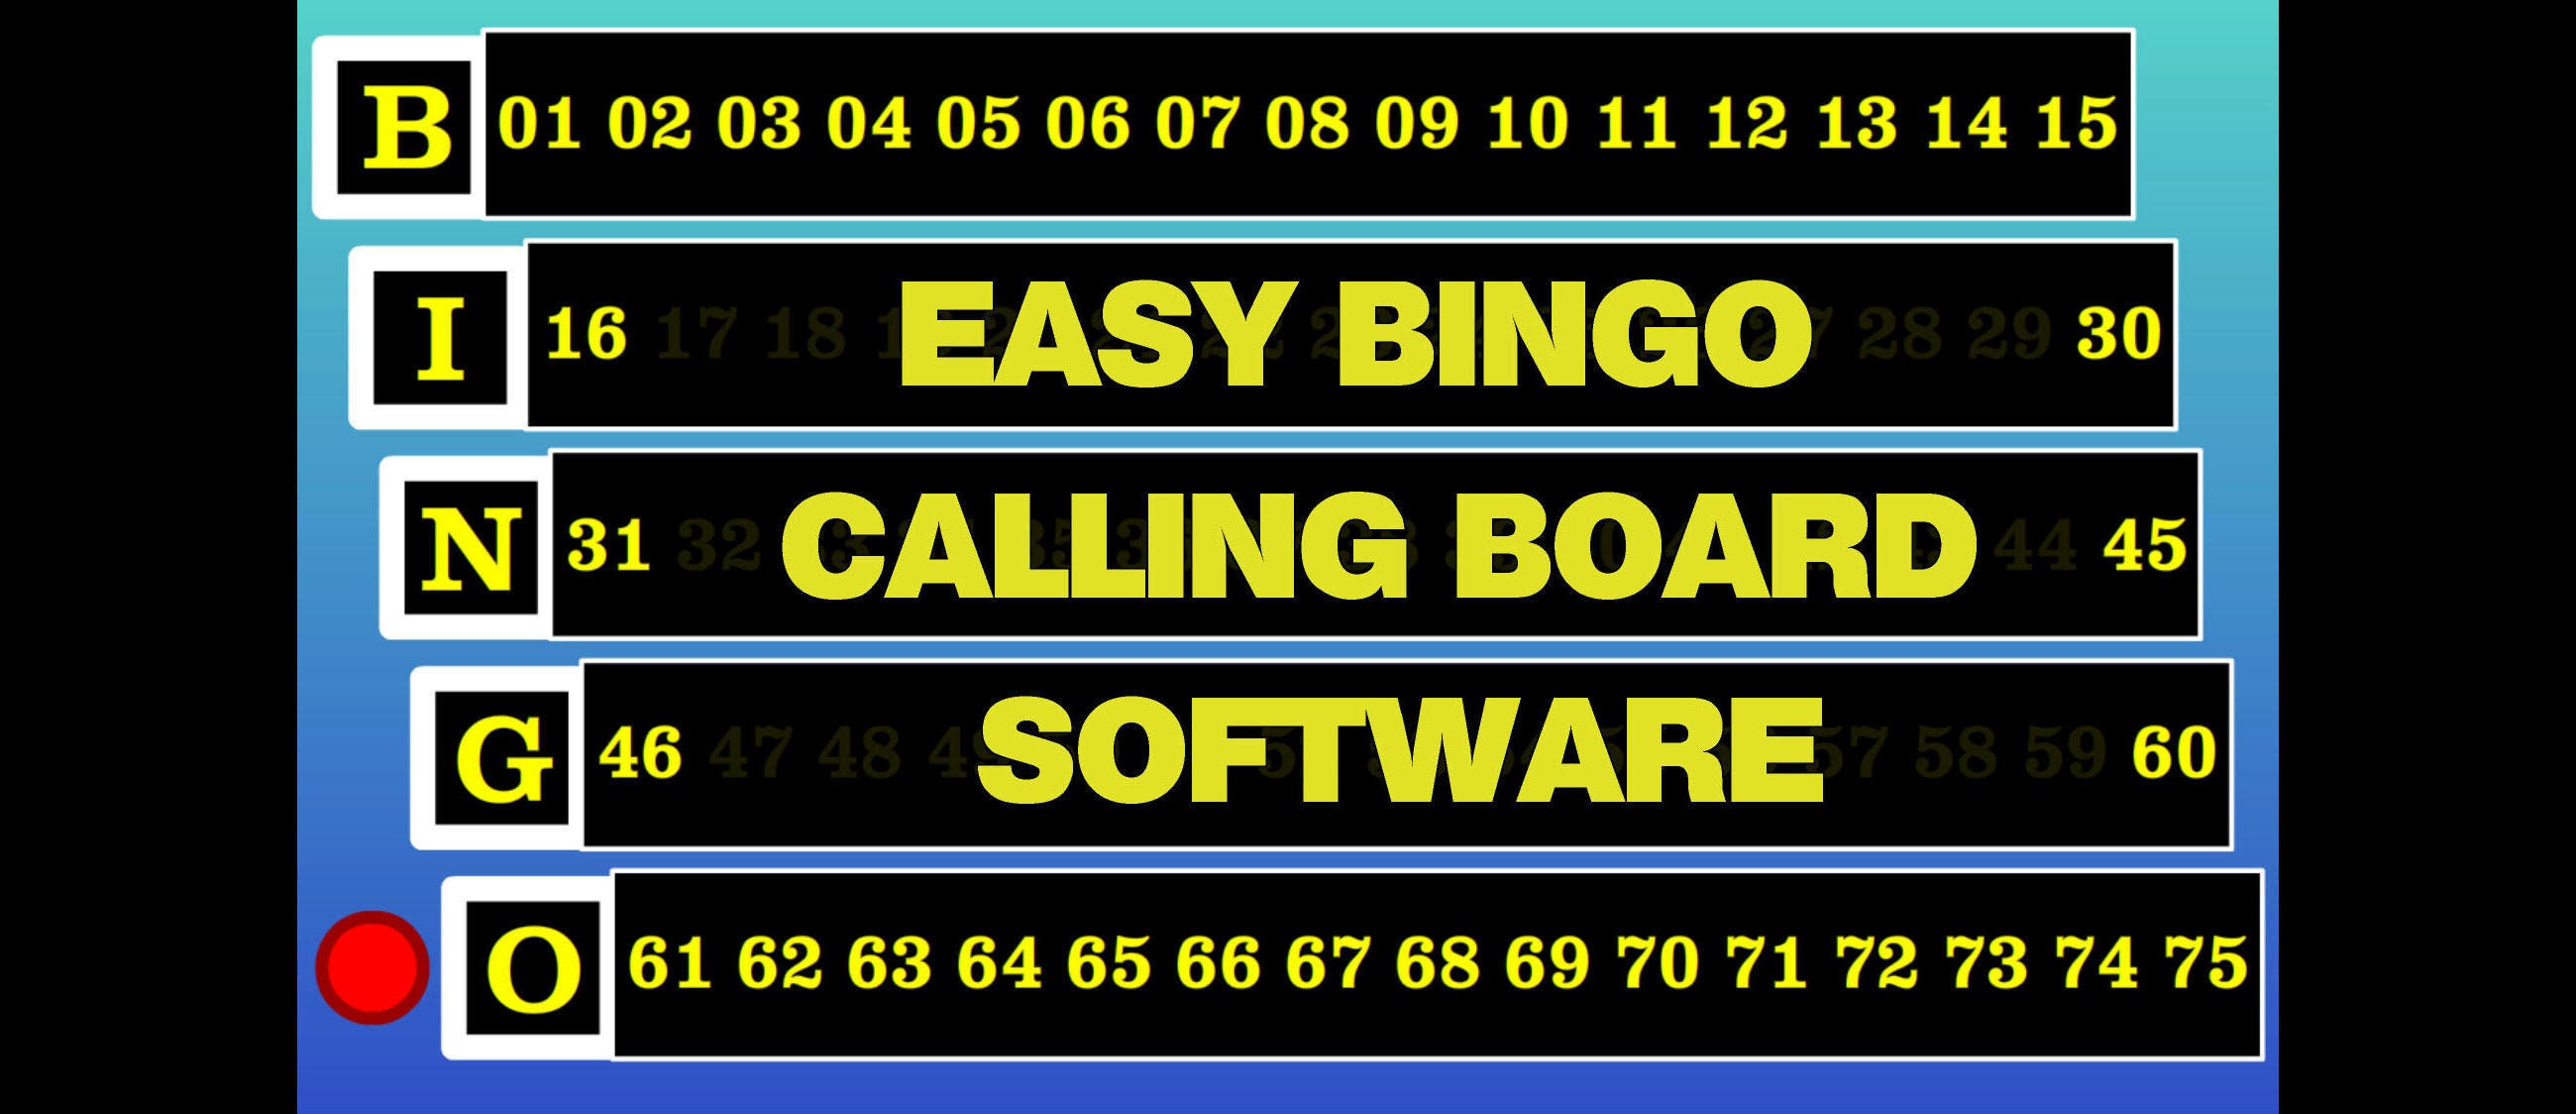 Bingo Calling SOFTWARE EMULATING Machine,Personalized for You Bingo Software 